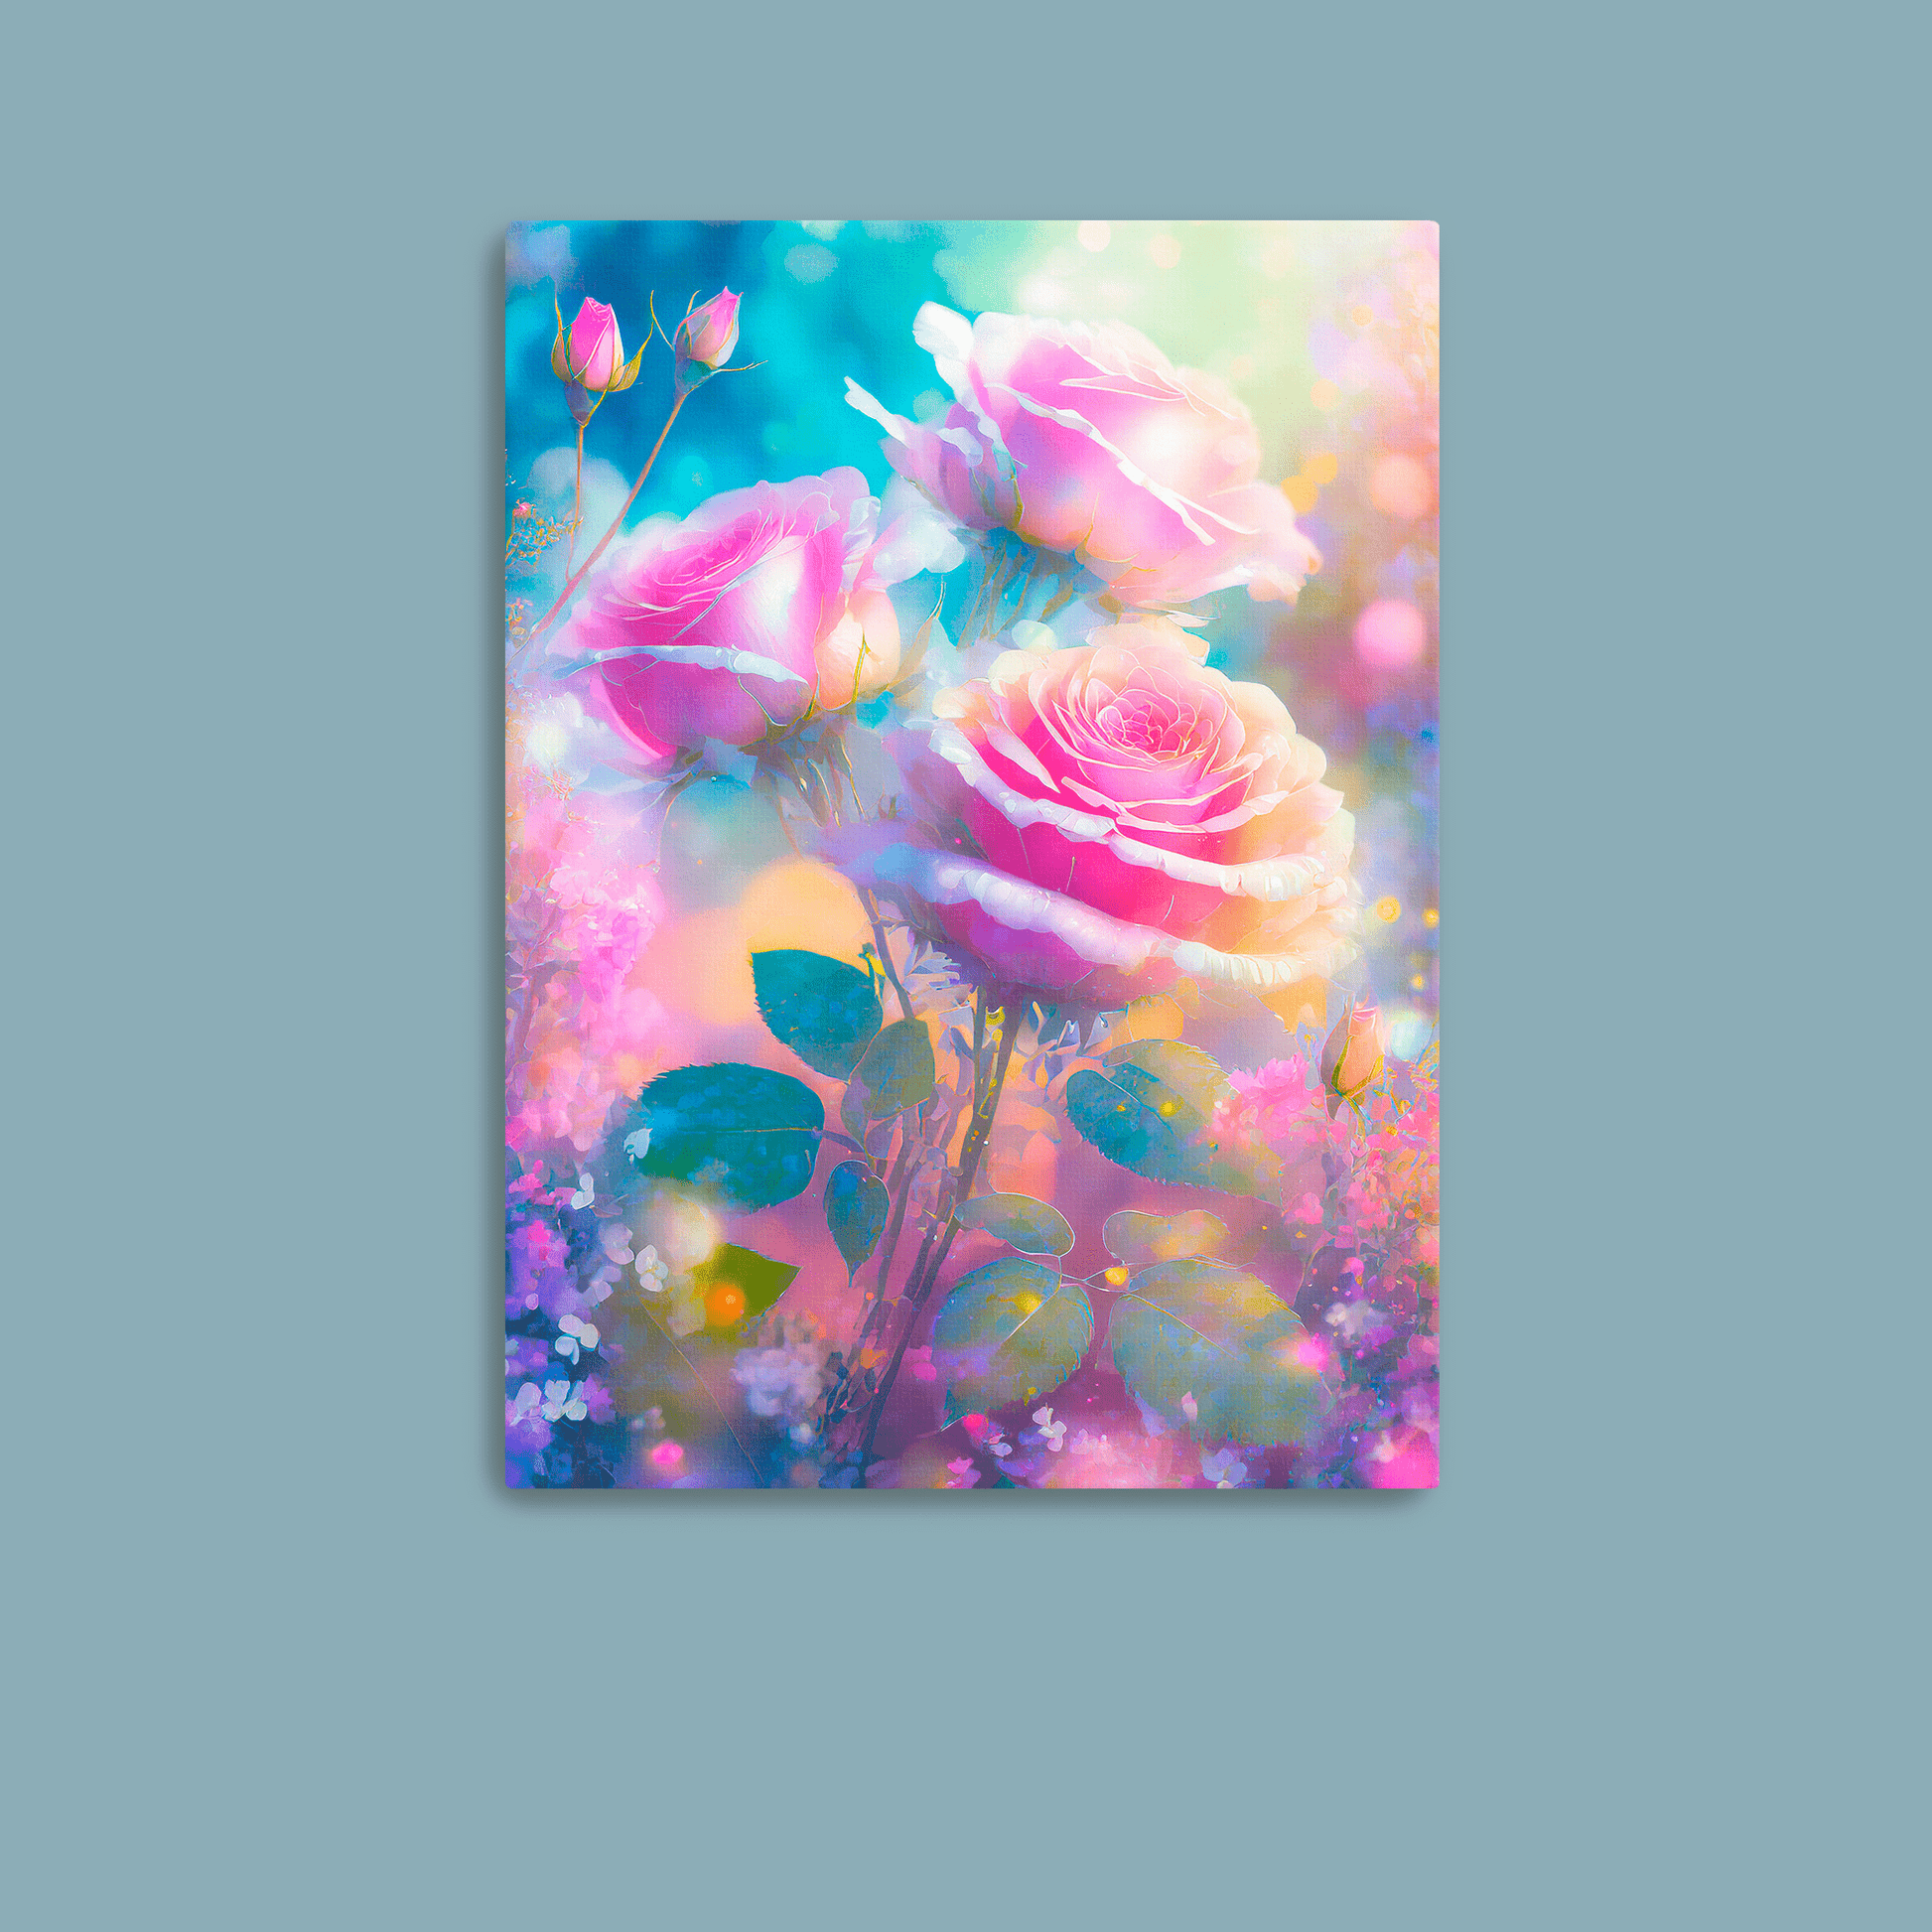 Celestial Garden - Canvas Wrap - Premium Canvas Print